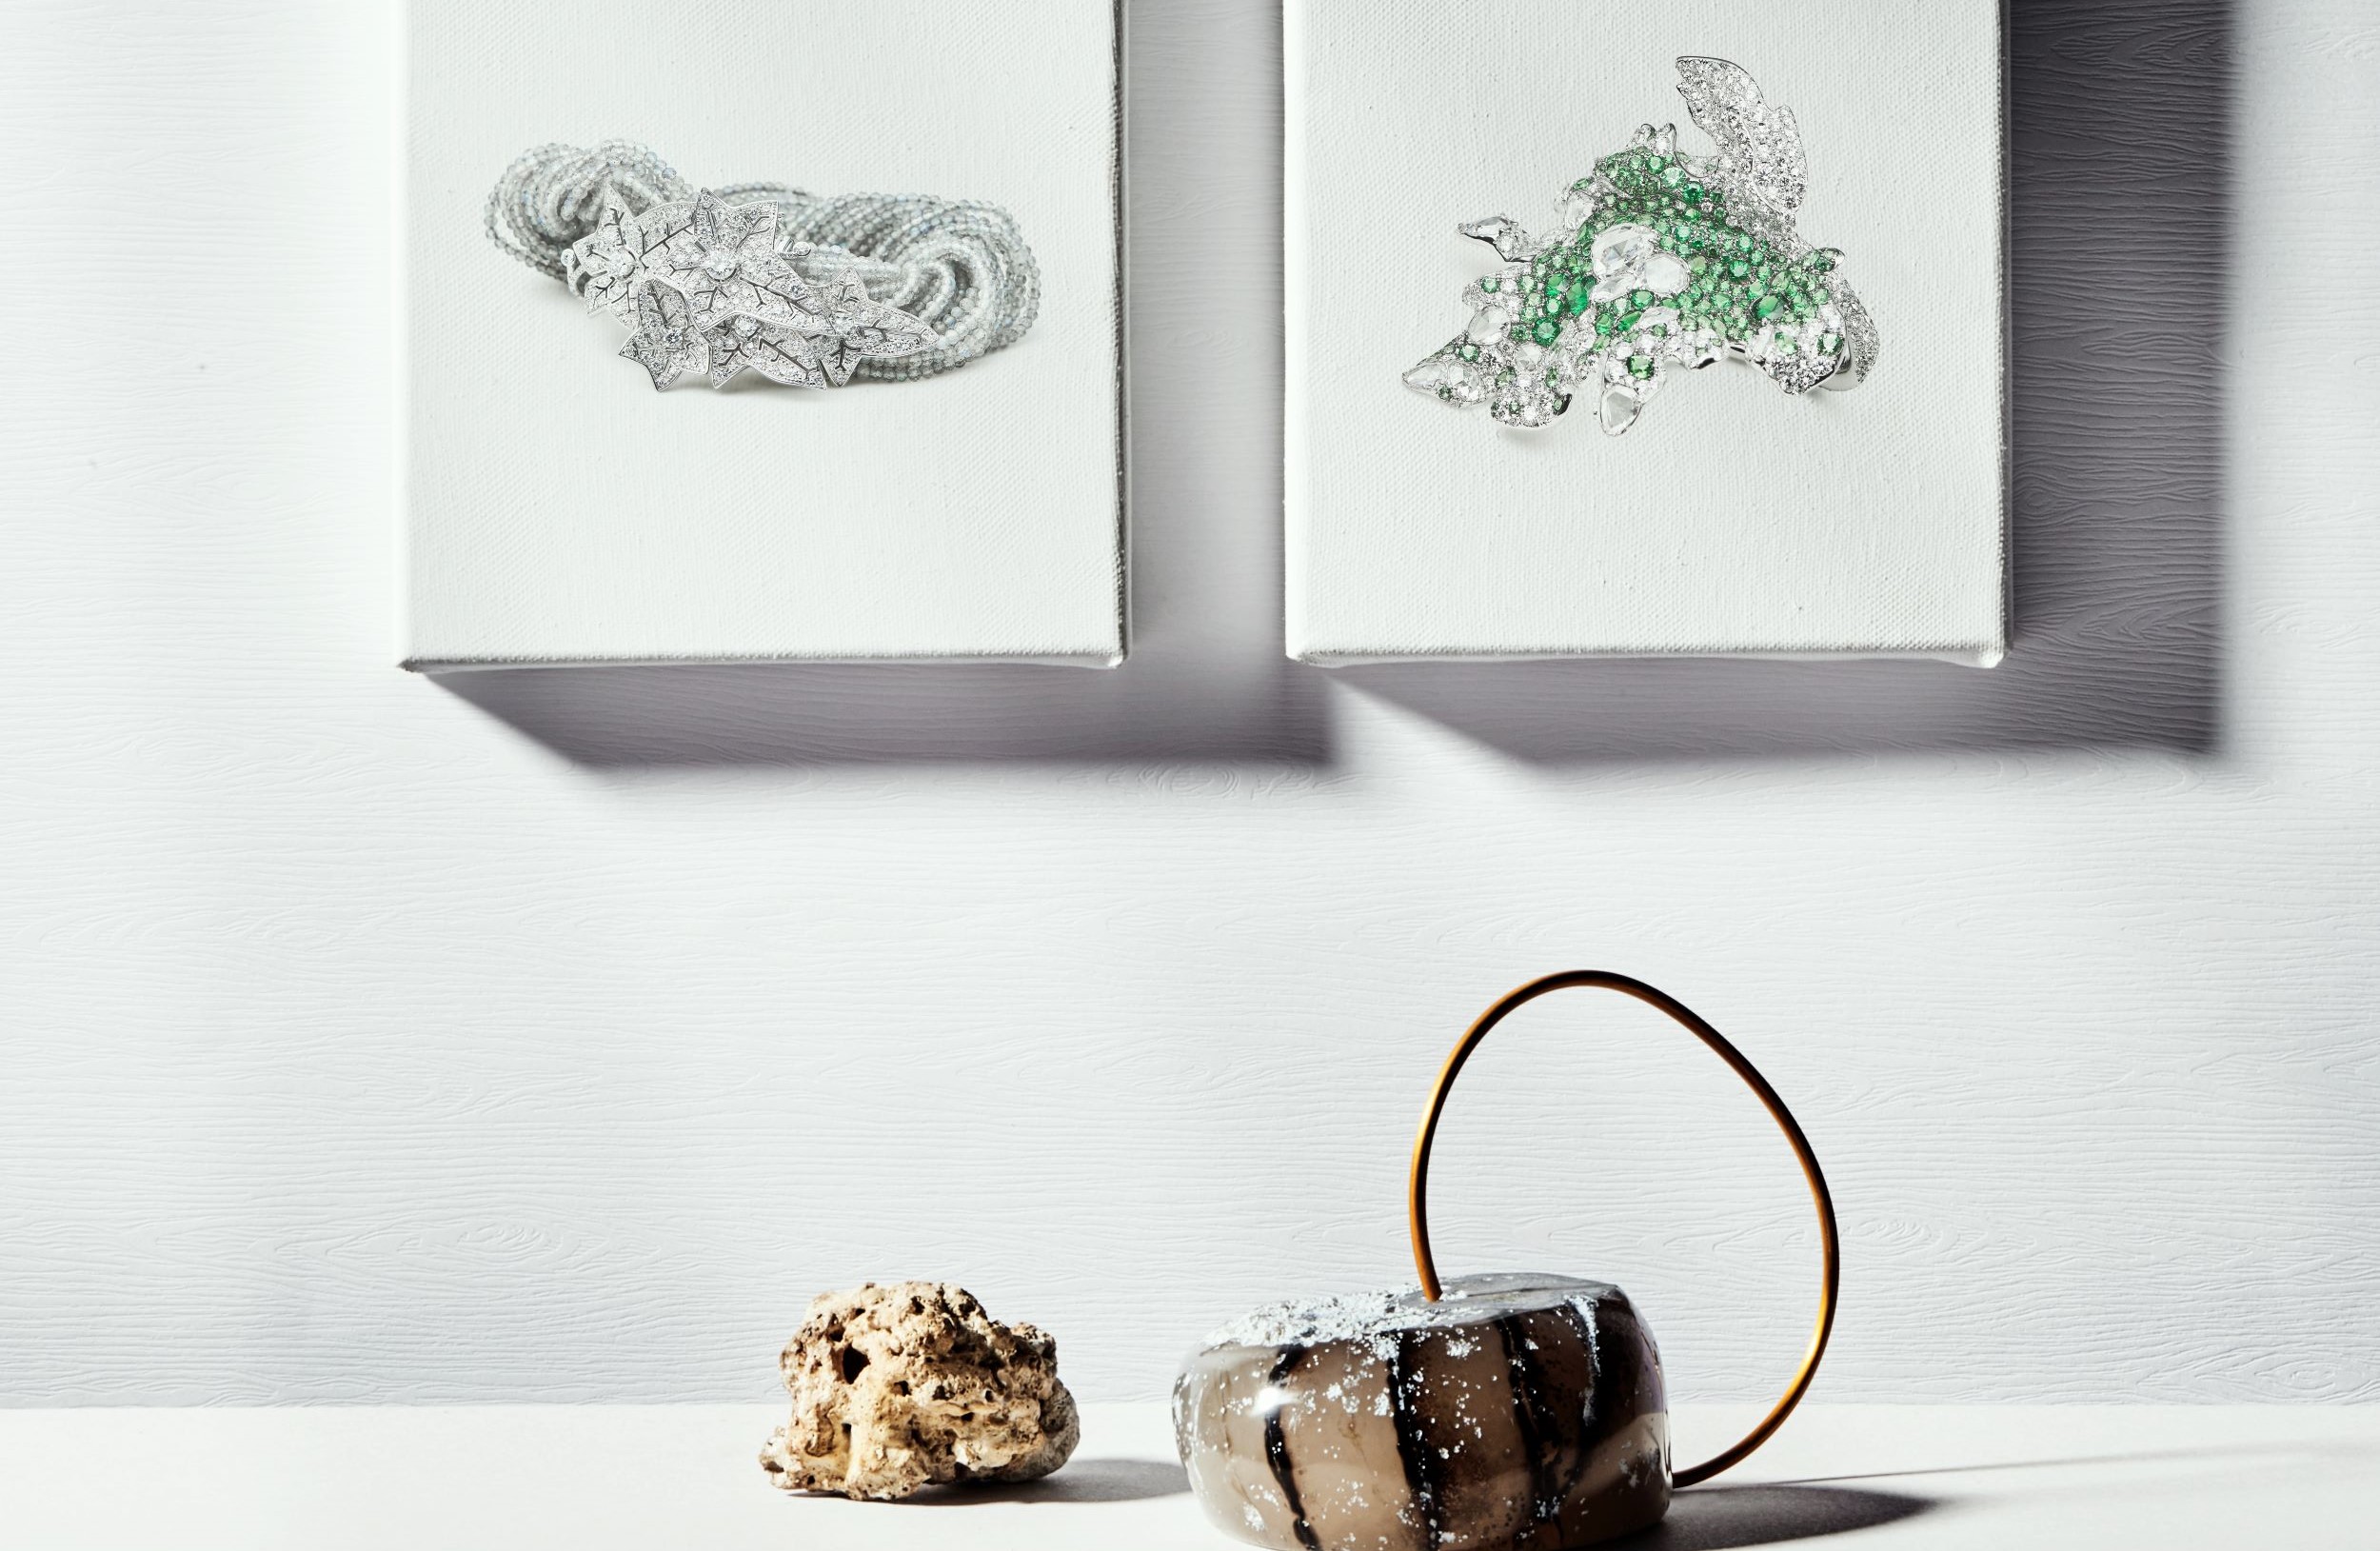 左：Lierre de Paris 常春藤手環，18K 白金、灰色拉長石、鑽石／Boucheron。右：White Label Collection 四季系列楓葉戒指，18K 白金、鑽石、沙弗萊石／Cindy Chao。